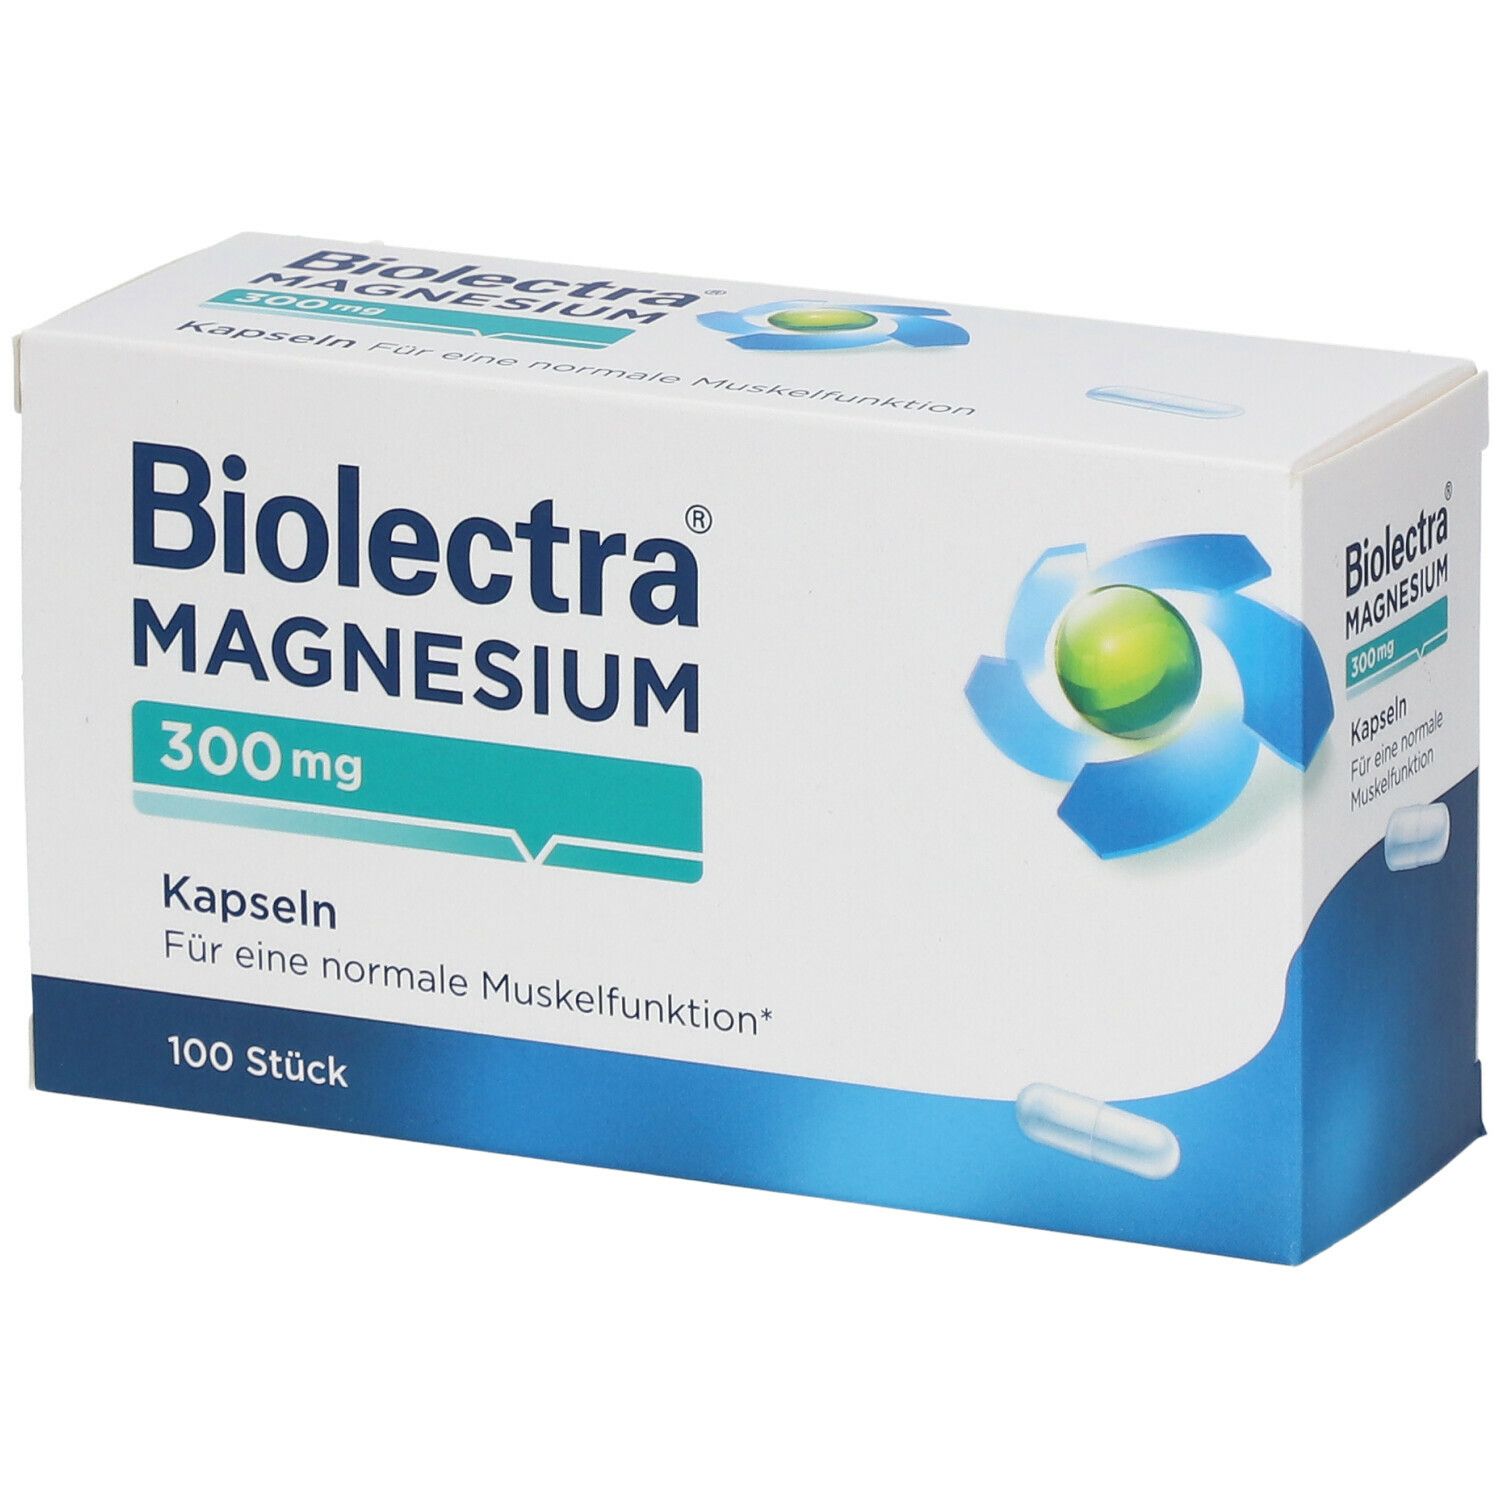 Biolectra® Magnesium 300 mg Kapseln